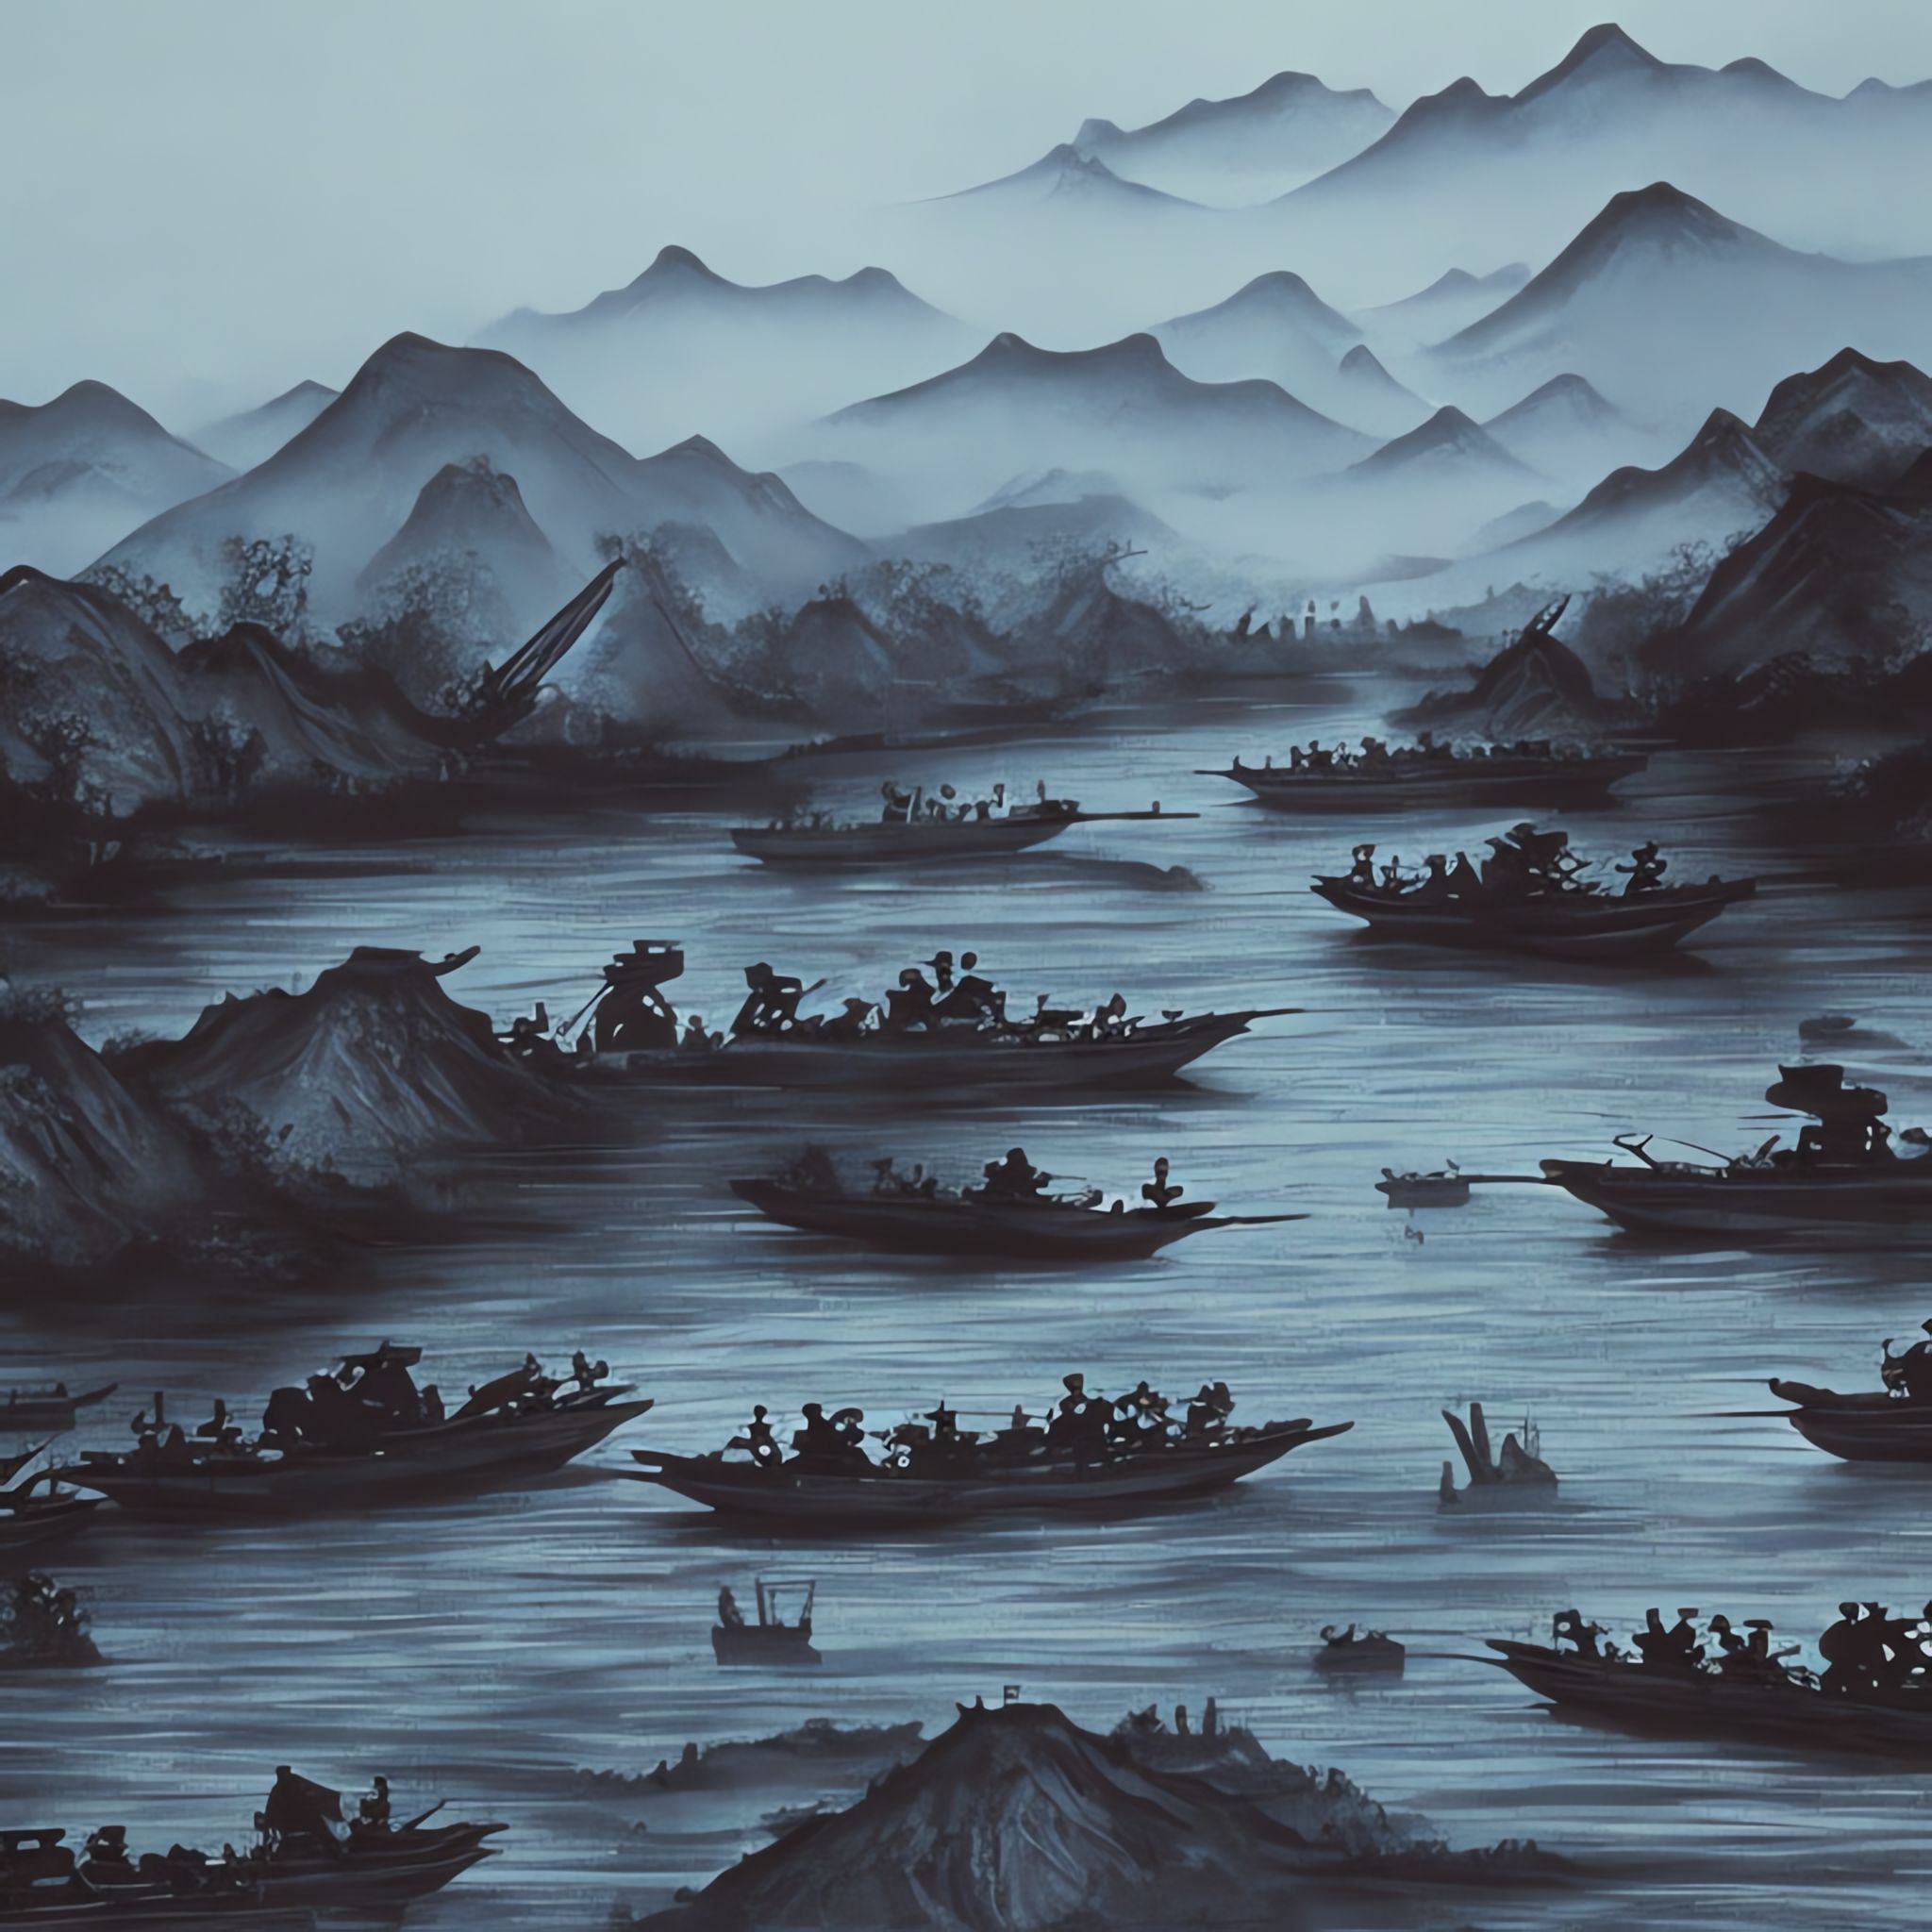 chinese-river-war-trending-on-artstation-1980s-s7be